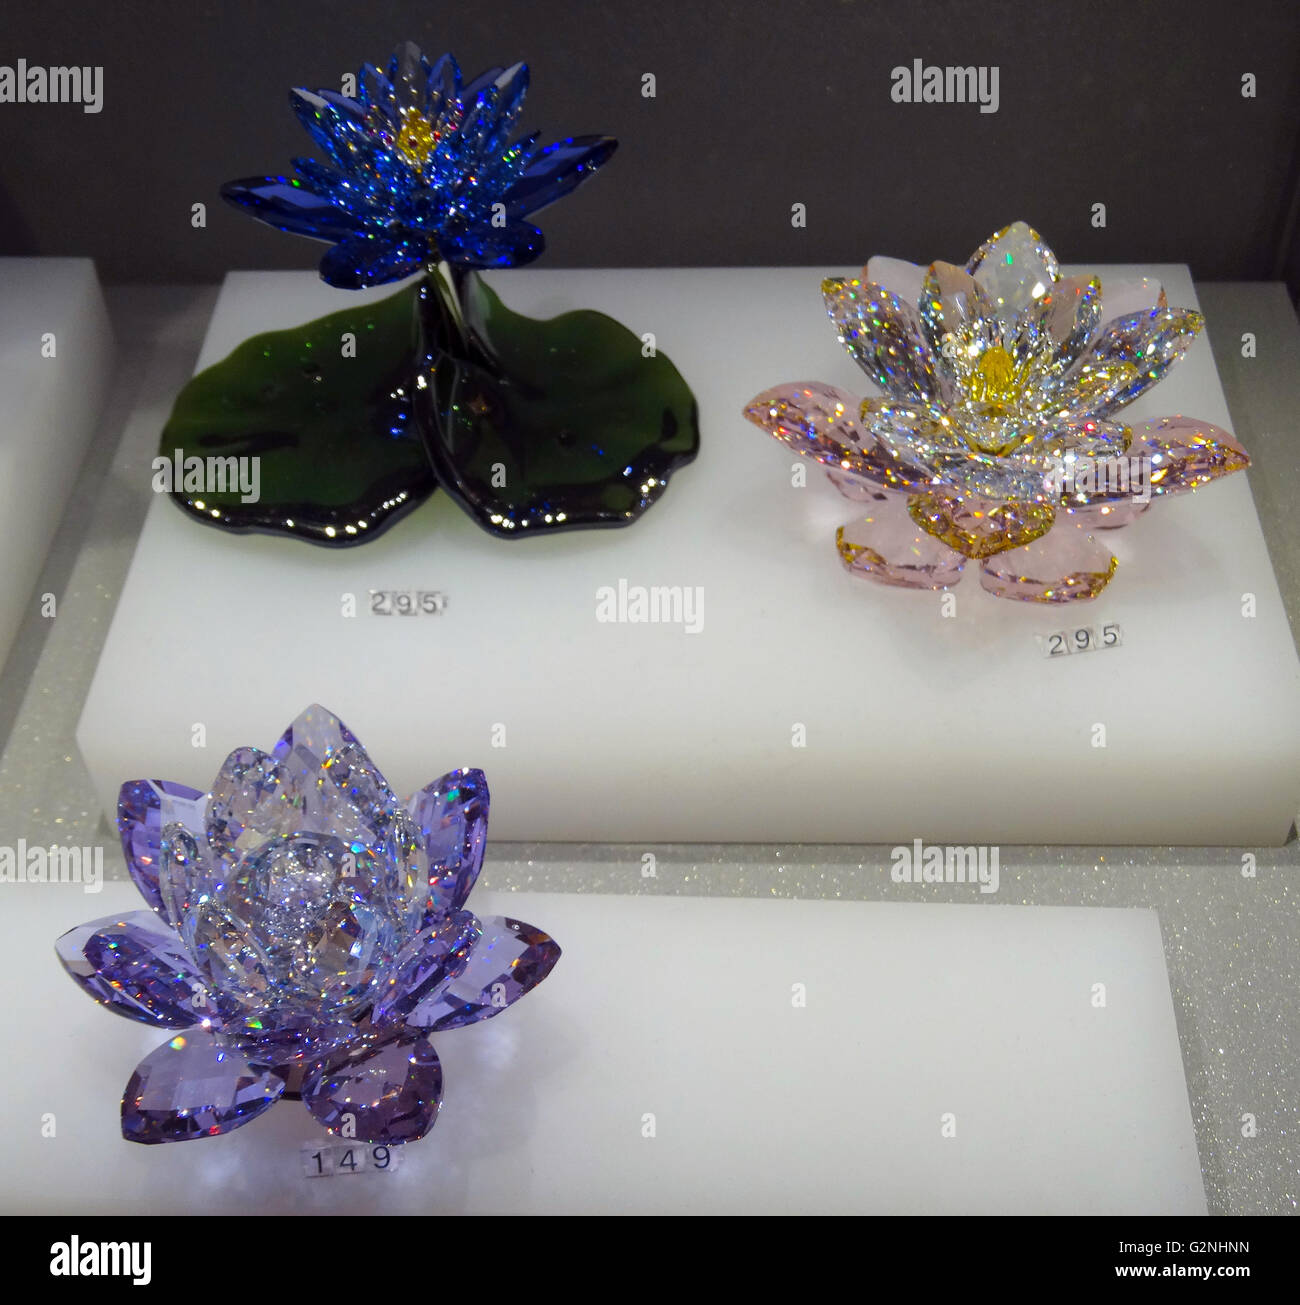 Collection de fleurs de lotus en cristal Swarovski. Swarovski est un producteur autrichien de luxe couper verre au plomb. Fondé par Daniel Swarovski (1862-1956). Datée 2014 Banque D'Images